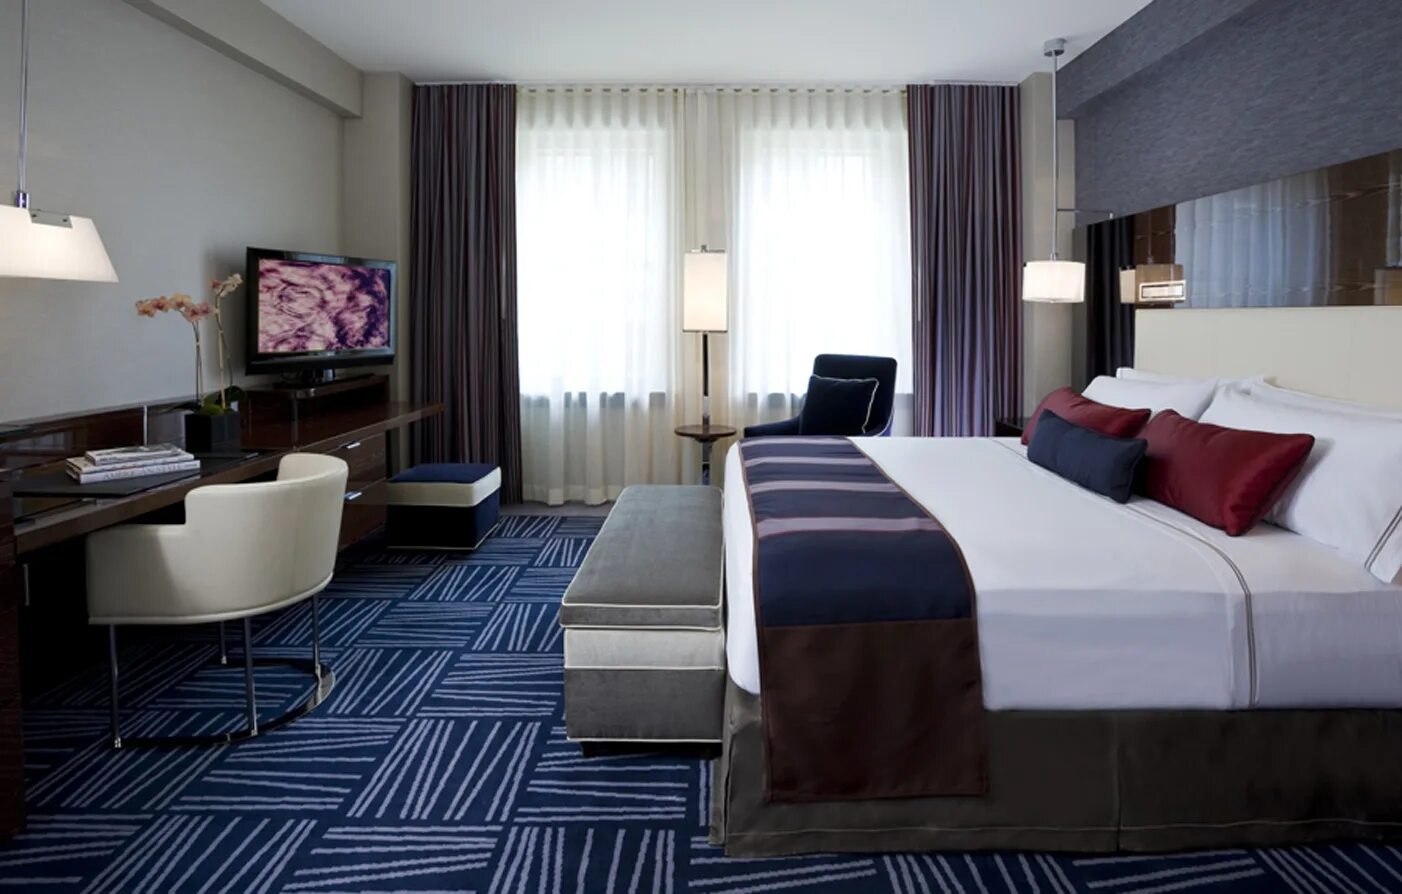 Модерн инн. Интерьер номера в гостинице. Отель в современном стиле. Интерьеры гостиниц в современном стиле. Спальня в гостиничном стиле.